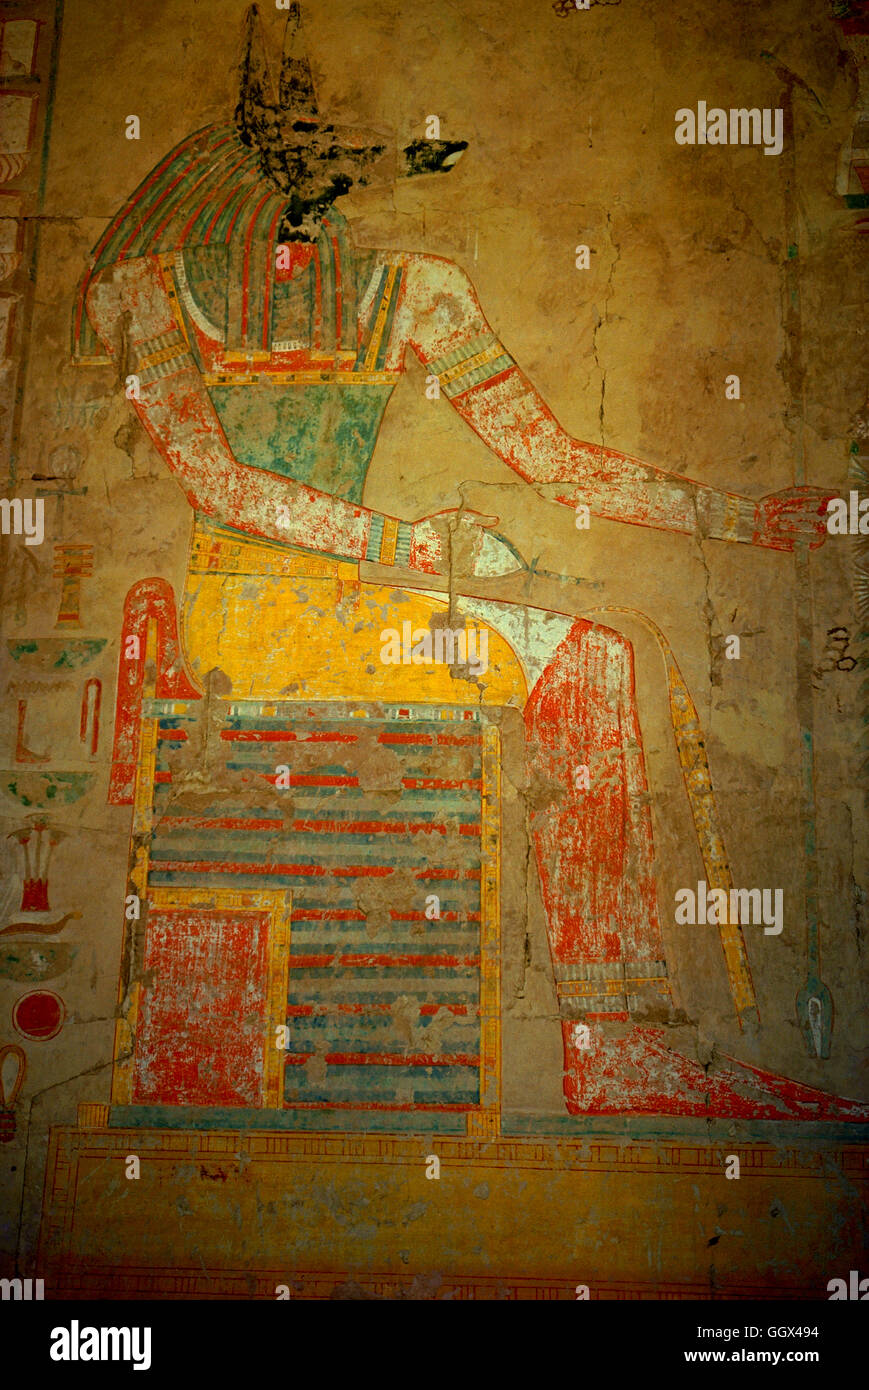 Dettaglio di un muro dipinto nella parte interna del tempio mortuario di Hatshepsut. La West Bank. Luxor - Egitto Foto Stock